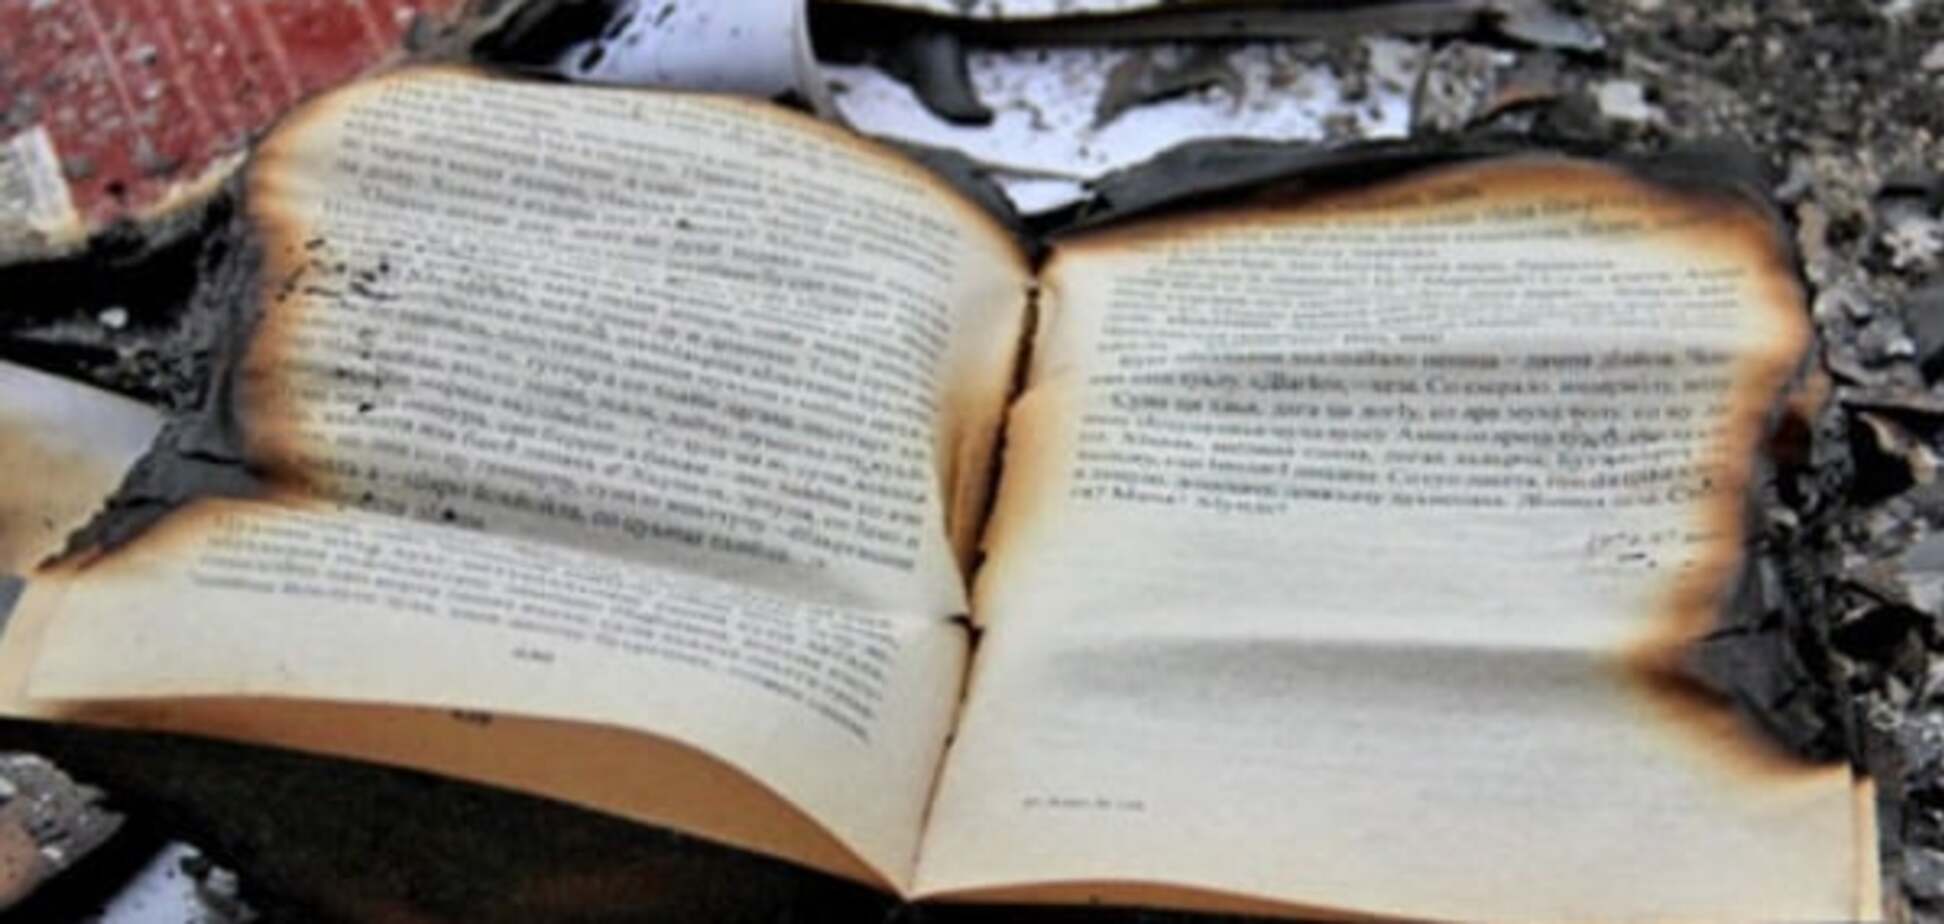 С сожжения книг в России переключатся на людей - историк 